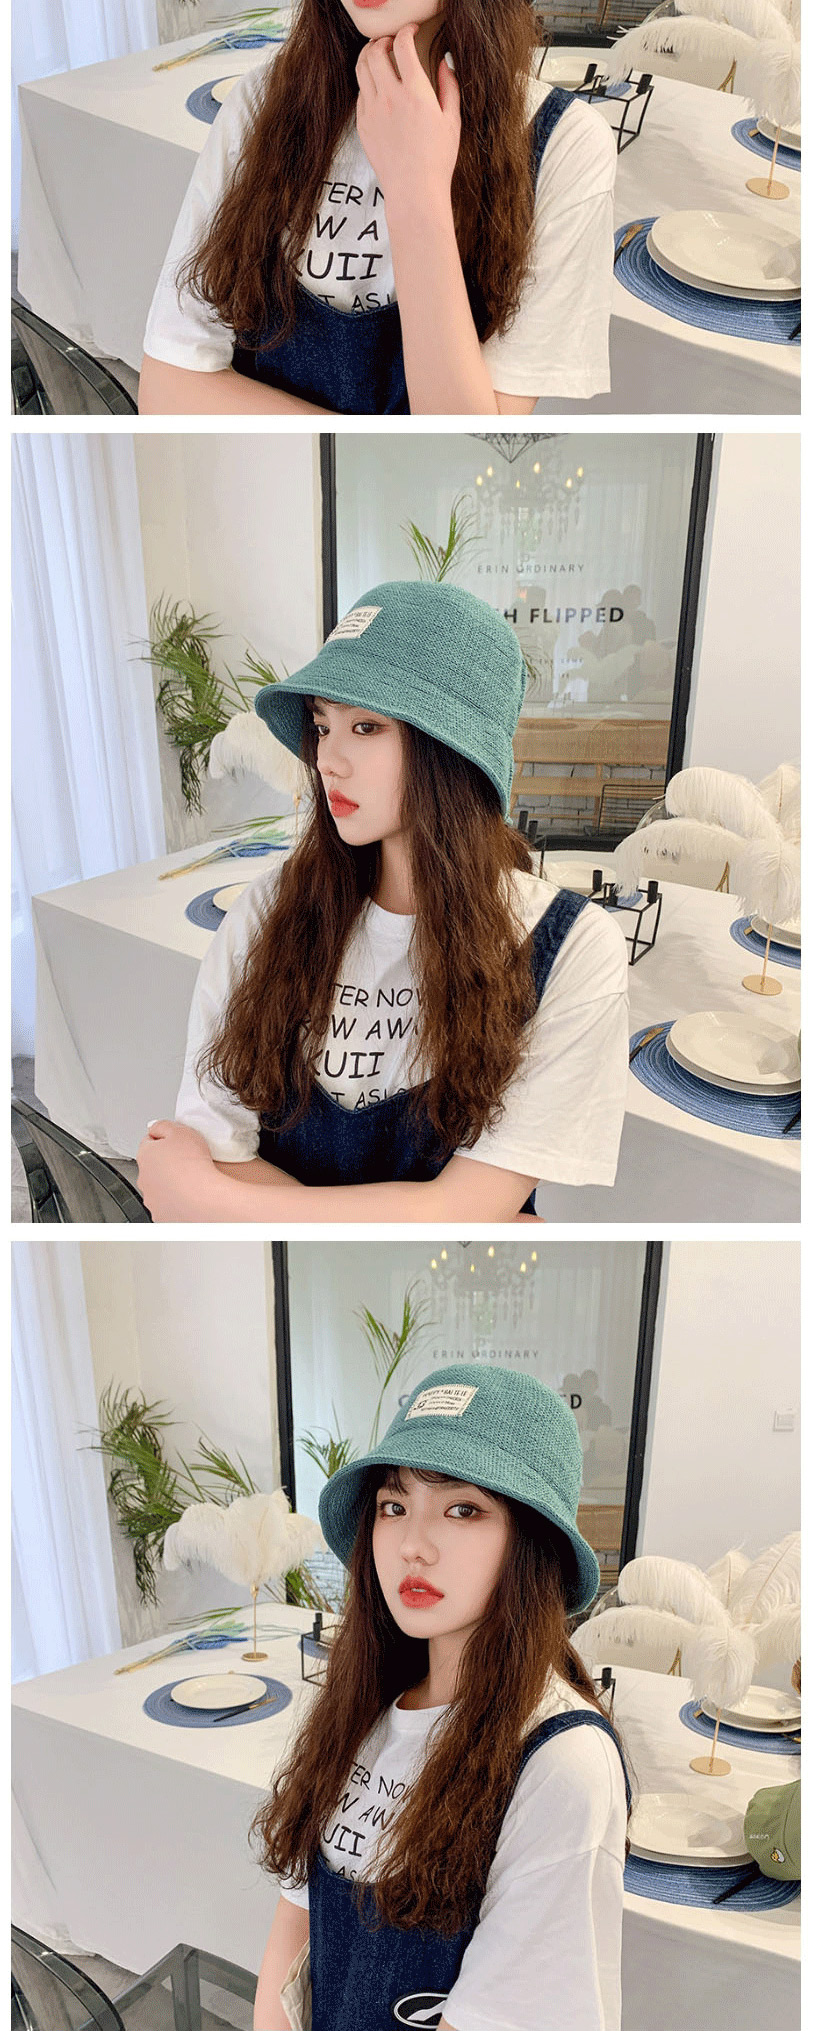 Fashion Creamy-white Knitted Milk Silk Cloth Sunshade Fisherman Hat,Sun Hats